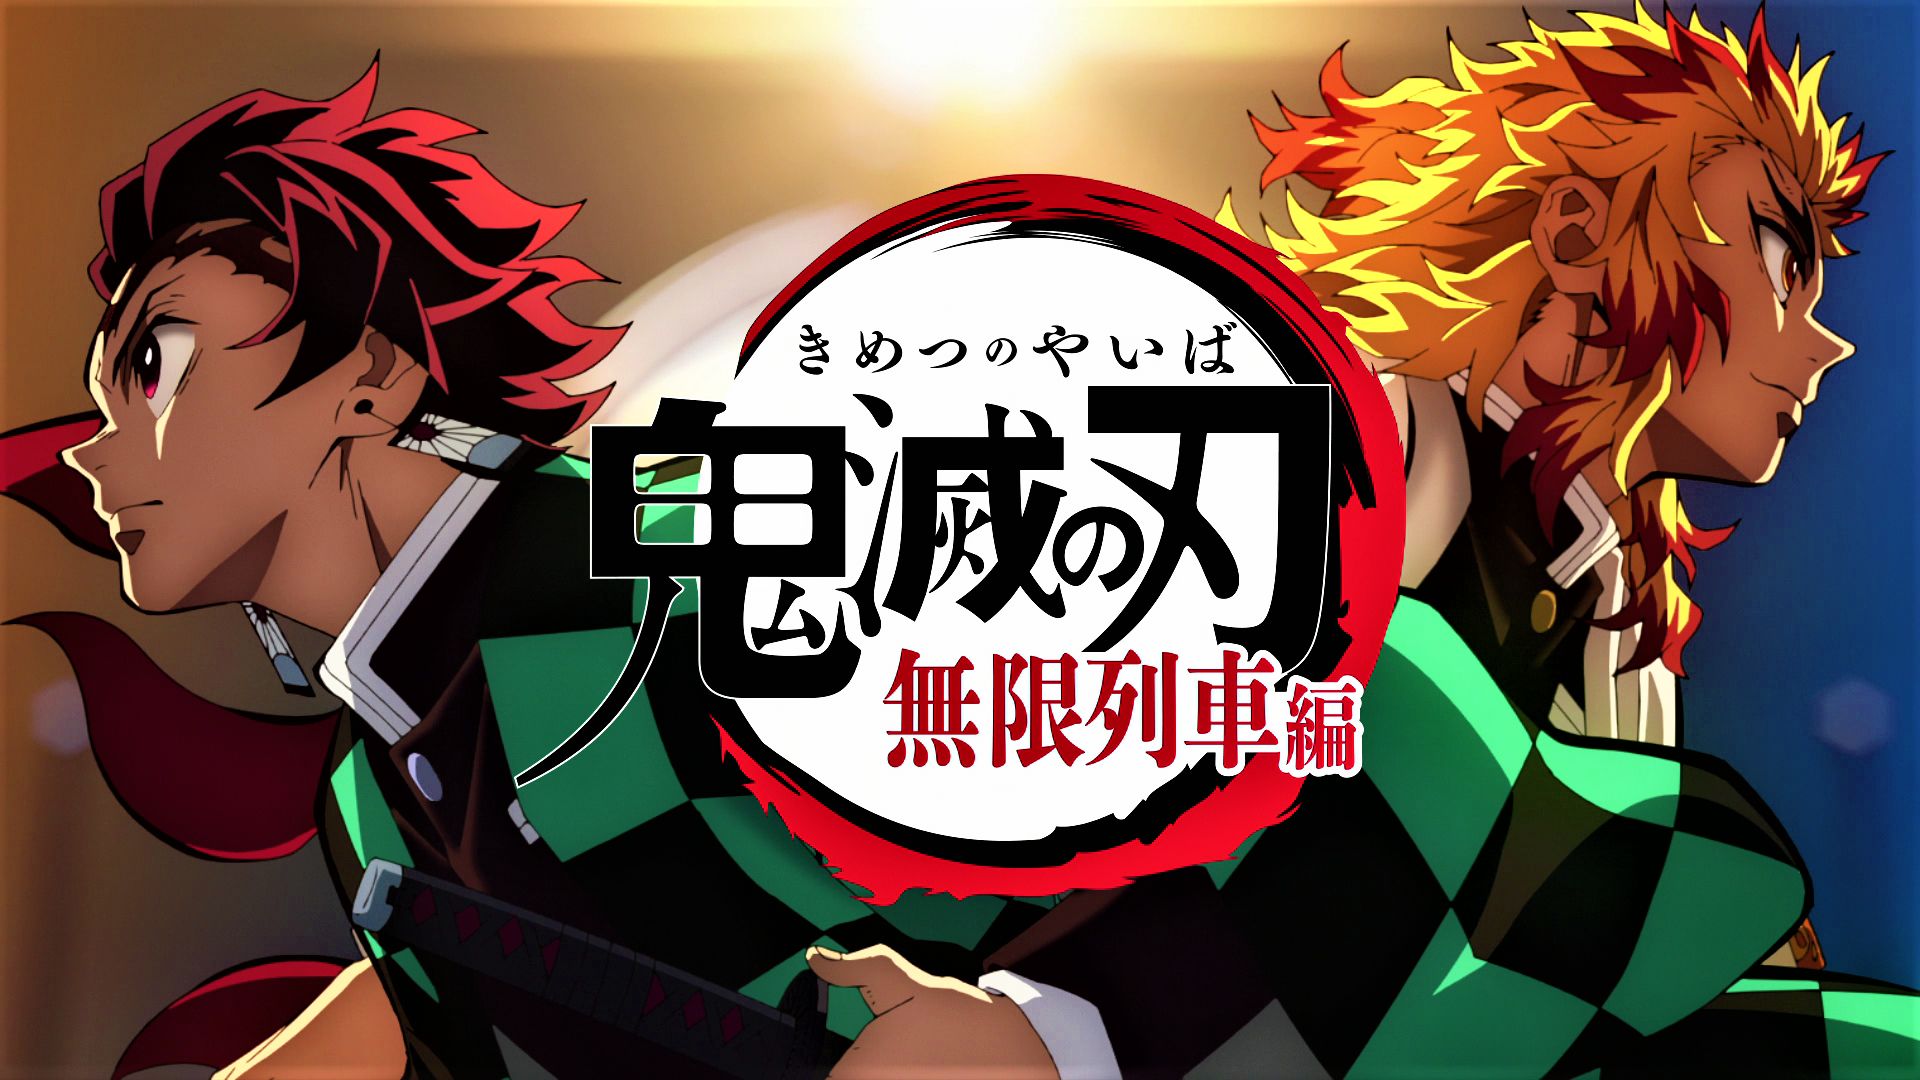 Download mobile wallpaper Anime, Demon Slayer: Kimetsu No Yaiba, Kyojuro Rengoku, Tanjiro Kamado for free.